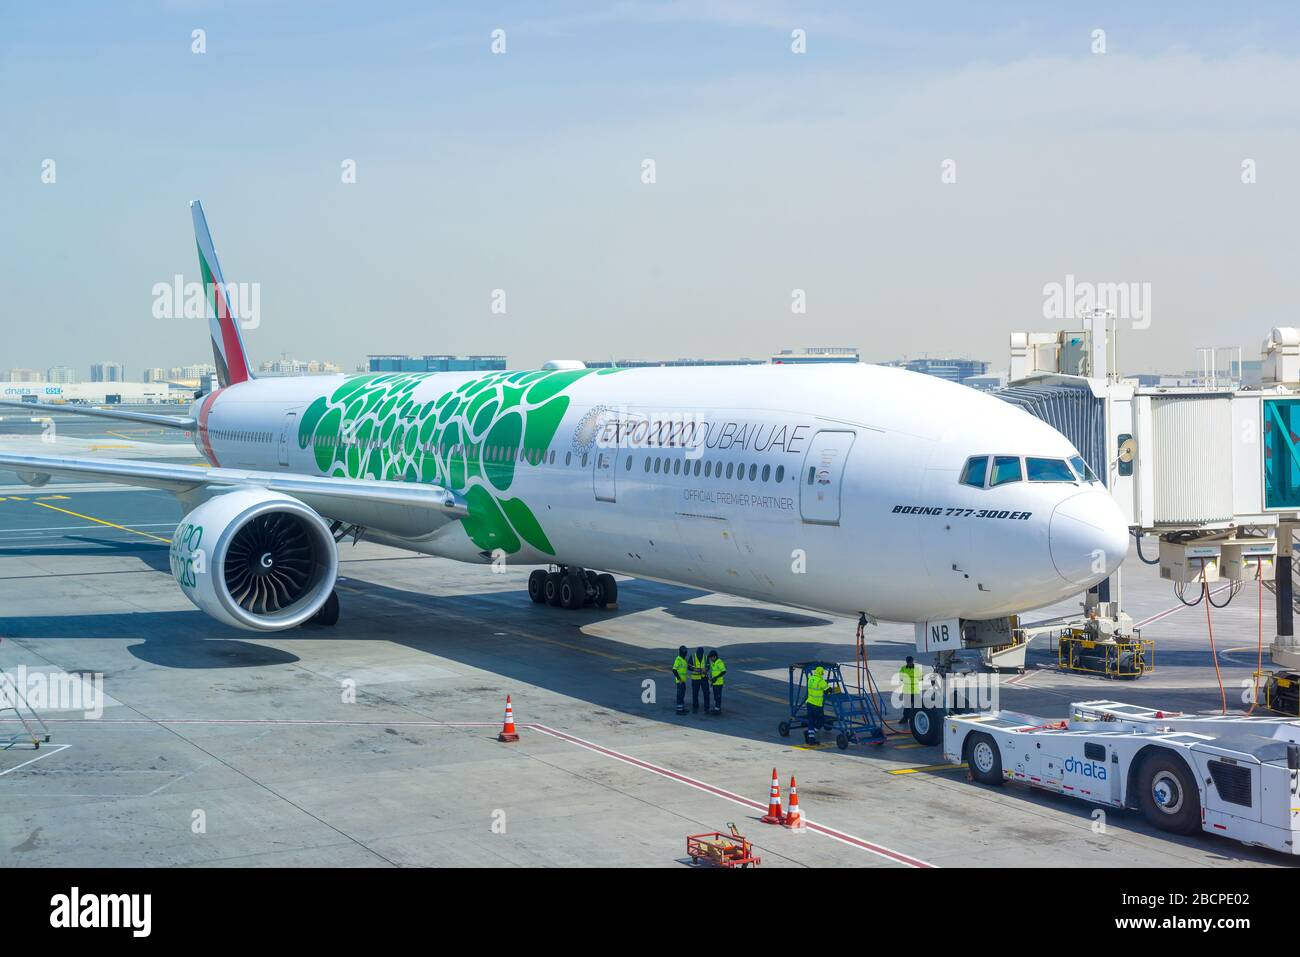 DUBAÏ, Émirats arabes Unis - 24 FÉVRIER 2020 : Boeing 777-300 (A6-ENB) Airline Emirates n l'aéroport international de Dubaï Banque D'Images